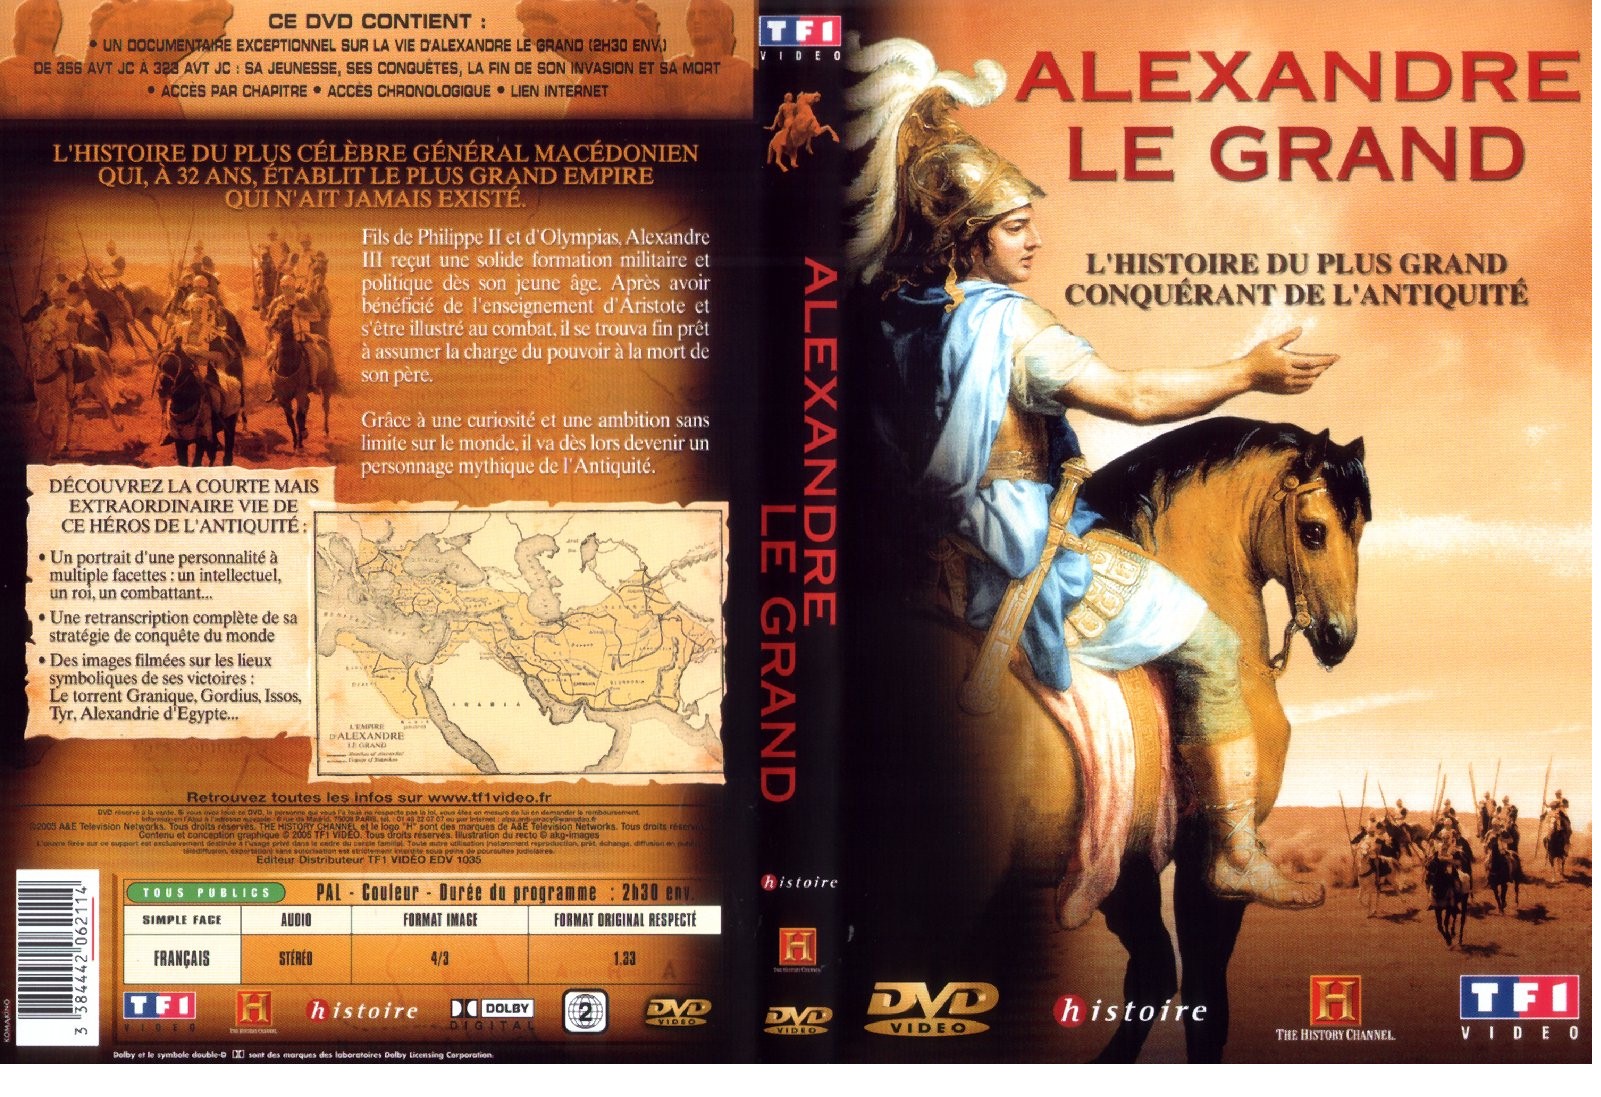 Jaquette DVD Alexandre le grand - Documentaire